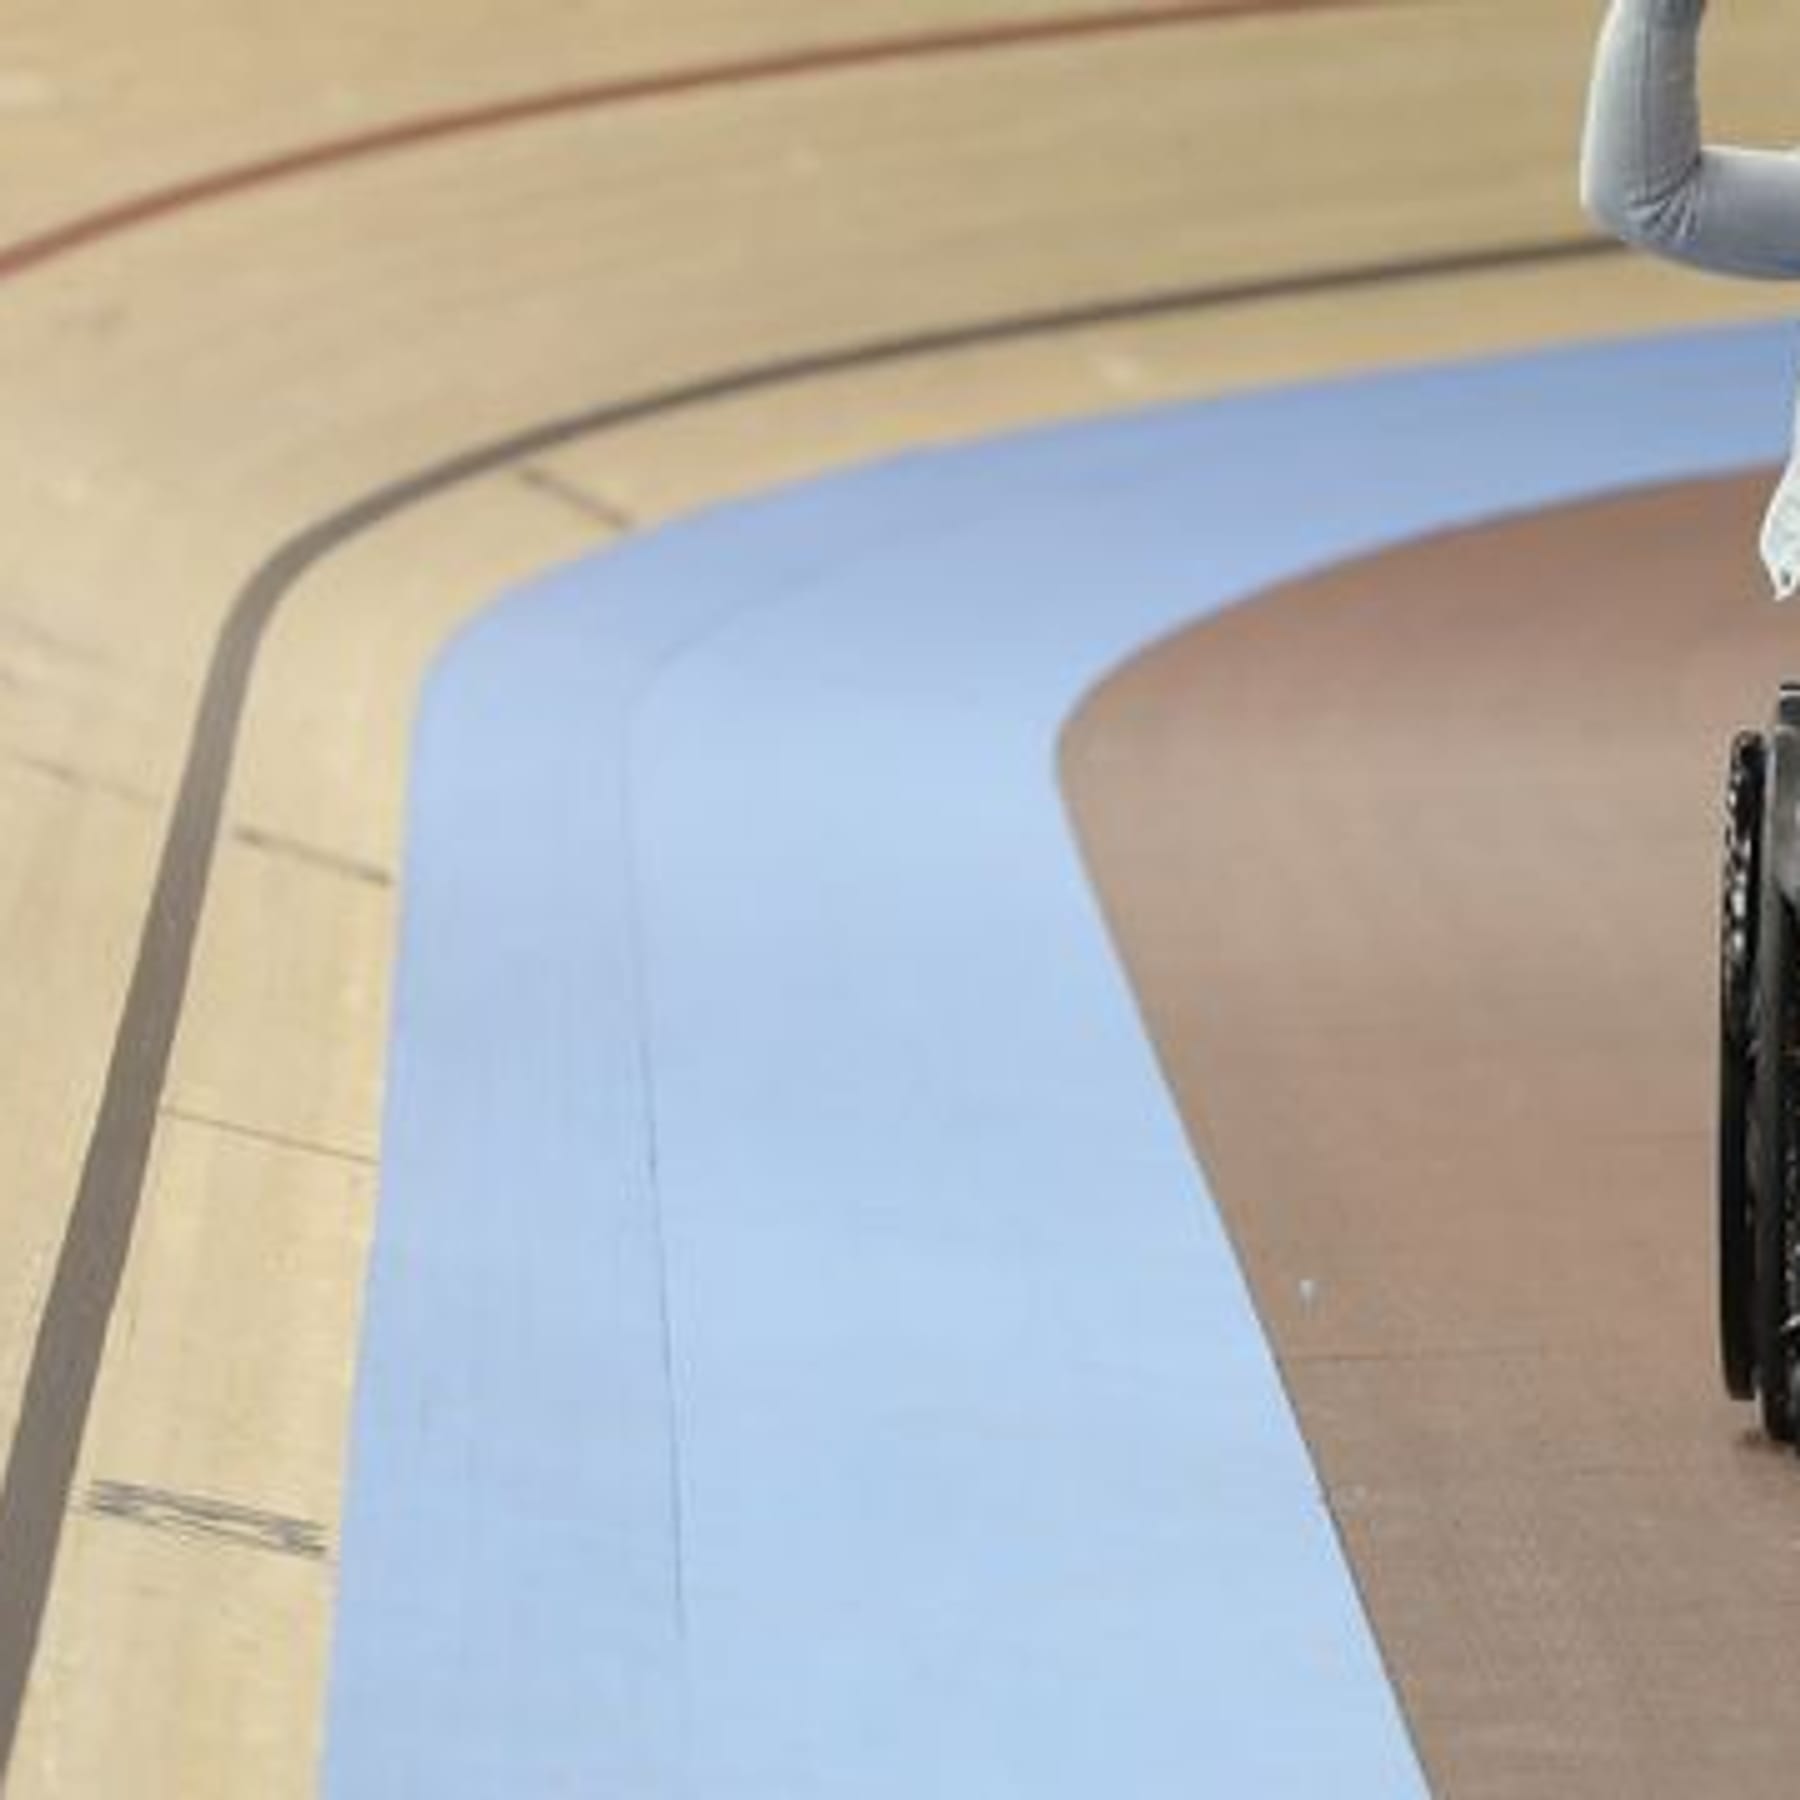 Bahnrad-Olympiasiegerin Kristina Vogel will keine Karriere im Para-Sport